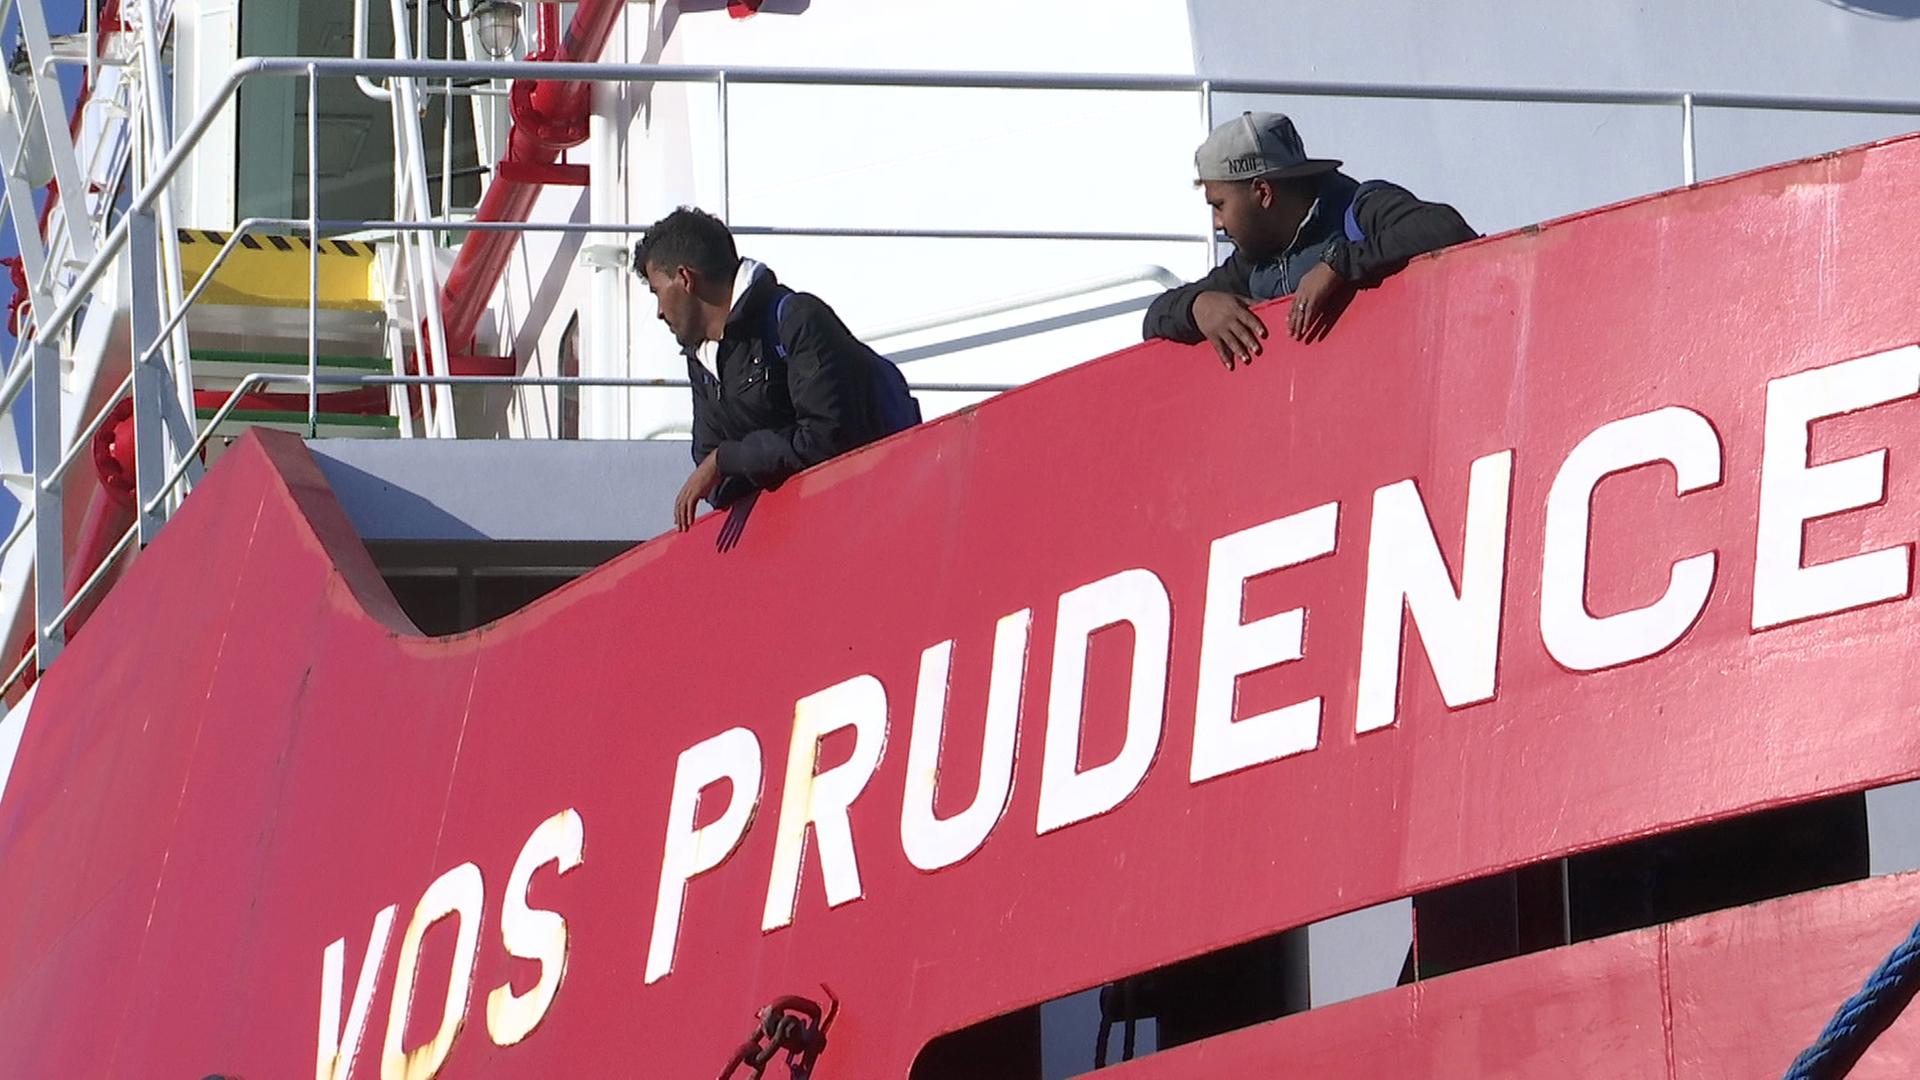 Zwei Flüchtlinge lehnen über den Rand des Rettungsschiffs "Prudence" der Organisation Ärzte ohne Grenzen